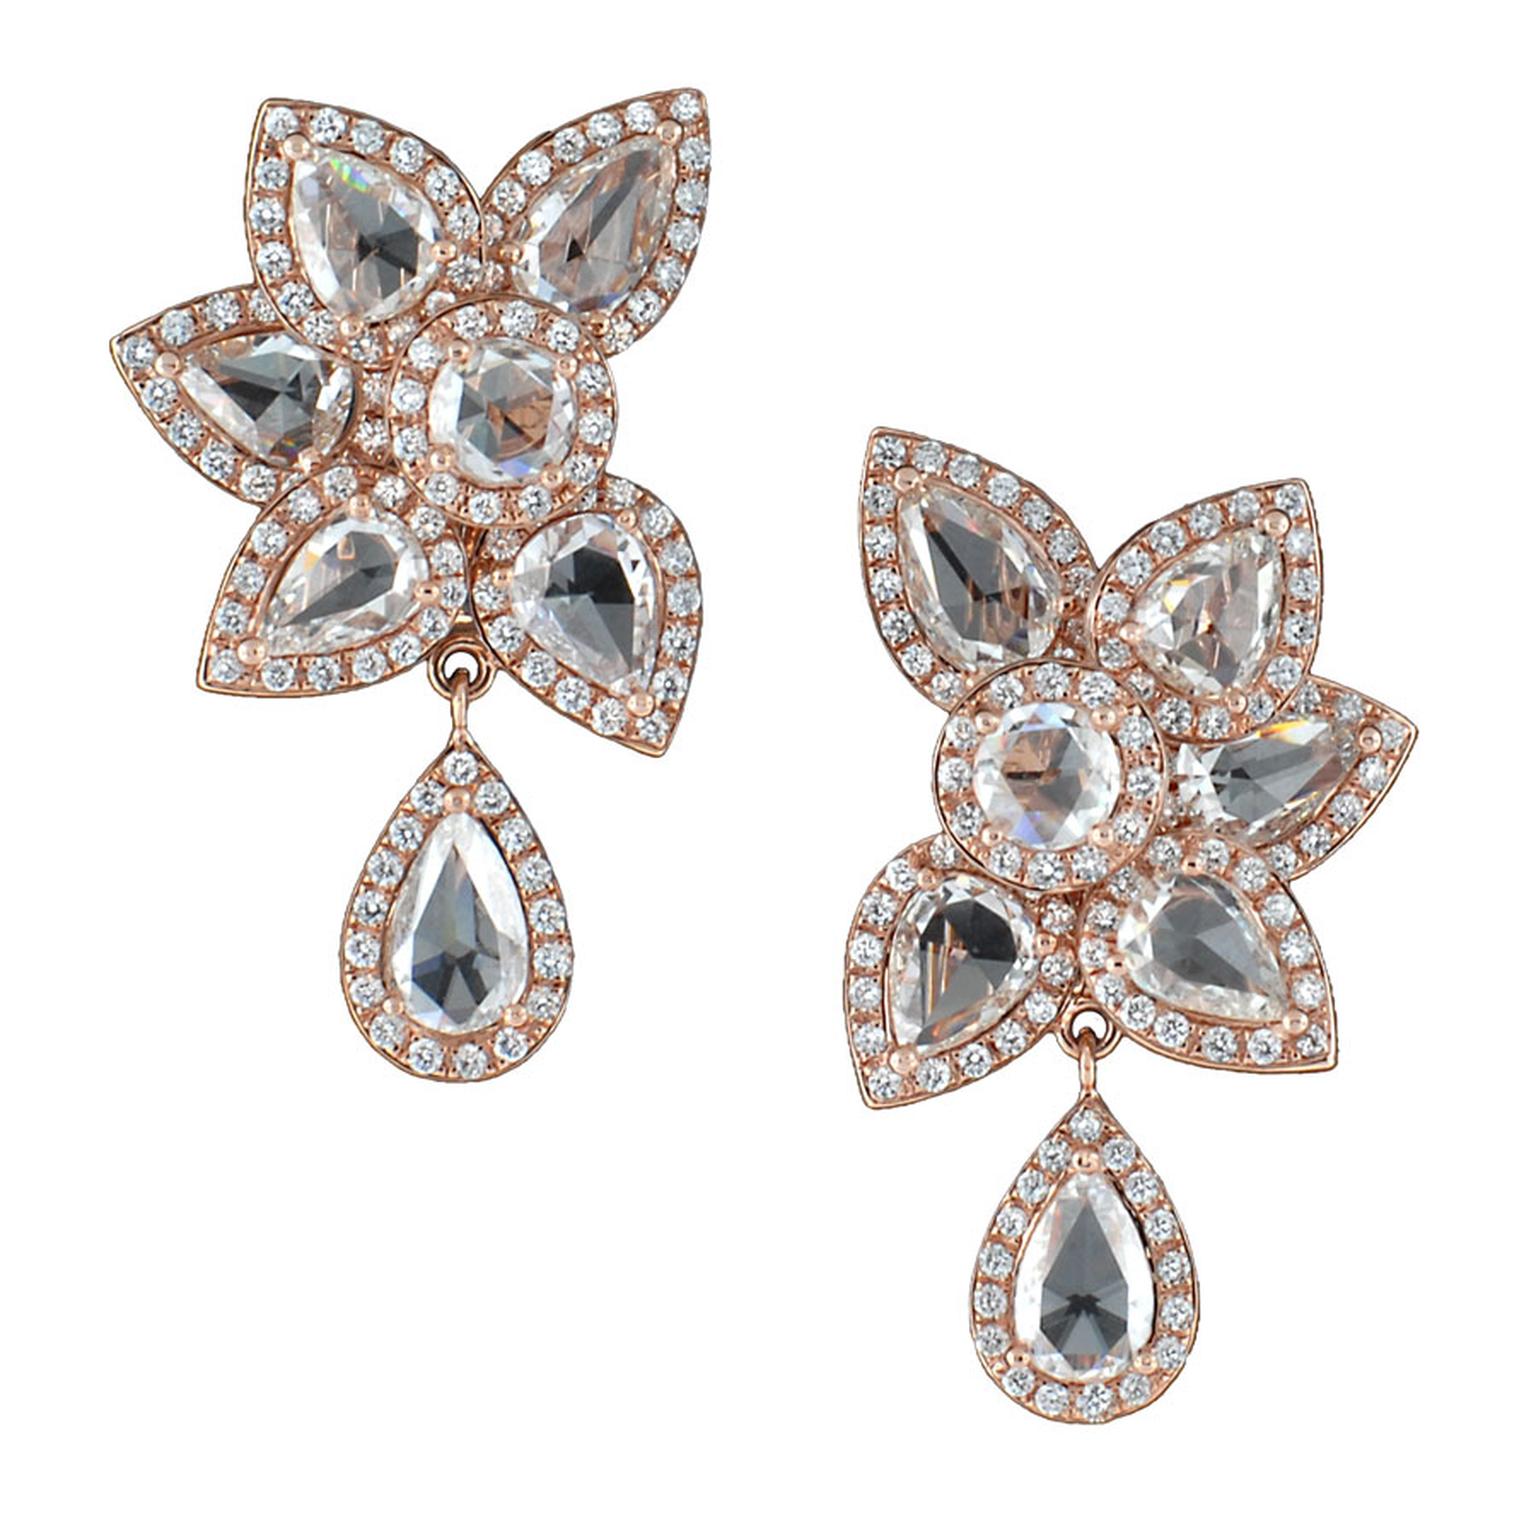 Avakian-Haute-Joaillerie-Flower-earrings